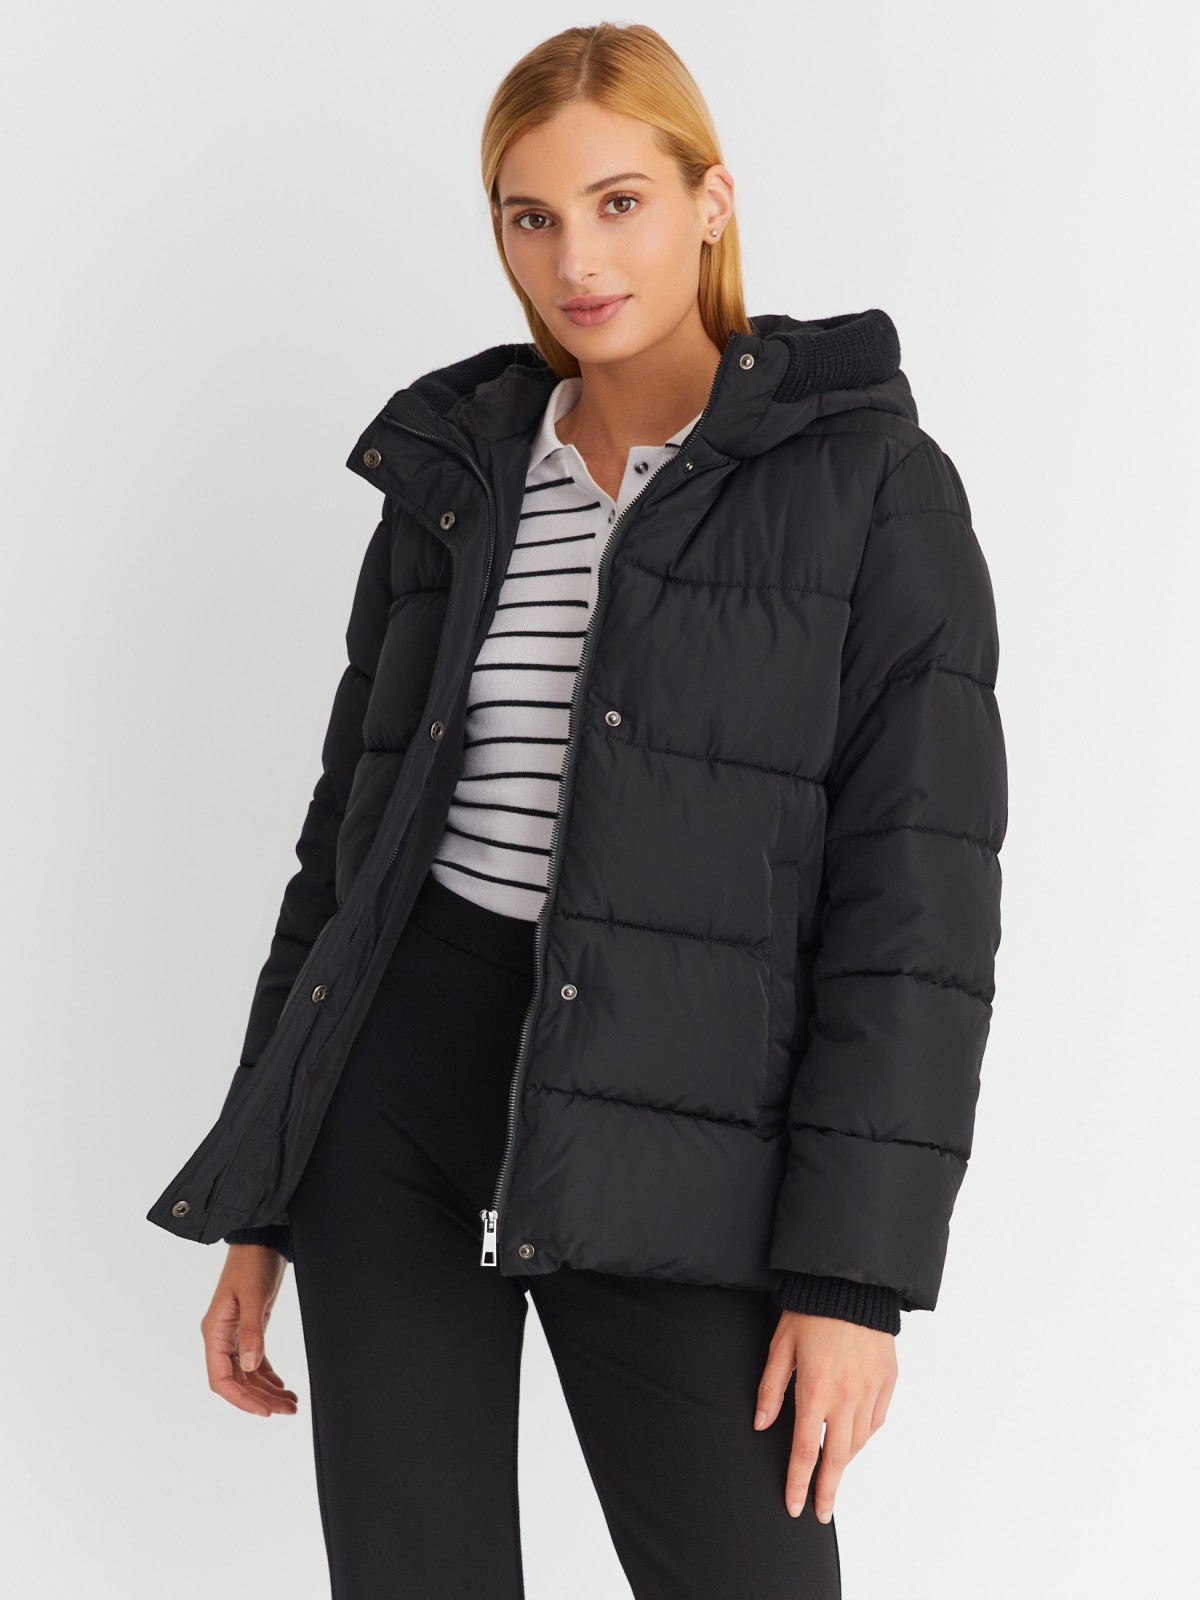 Тёплая стёганая куртка с капюшоном и внутренними манжетами-риб zolla 023345102064, цвет черный, размер S